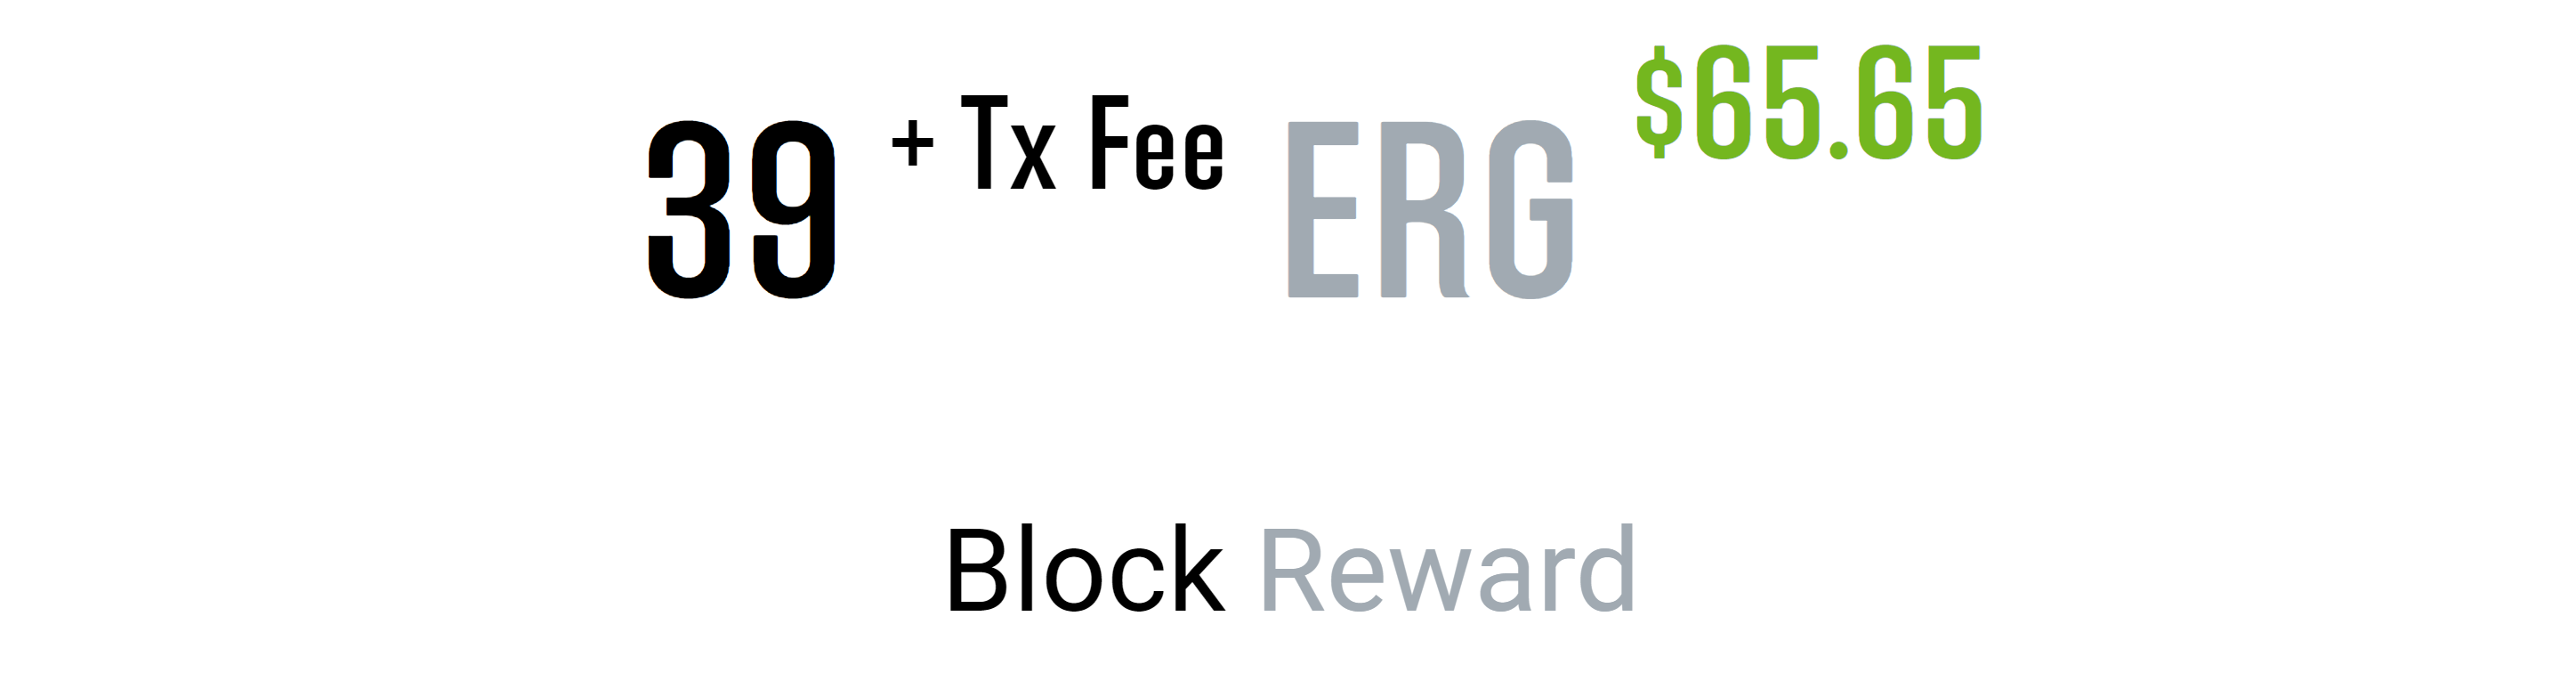 erg_block_rewards